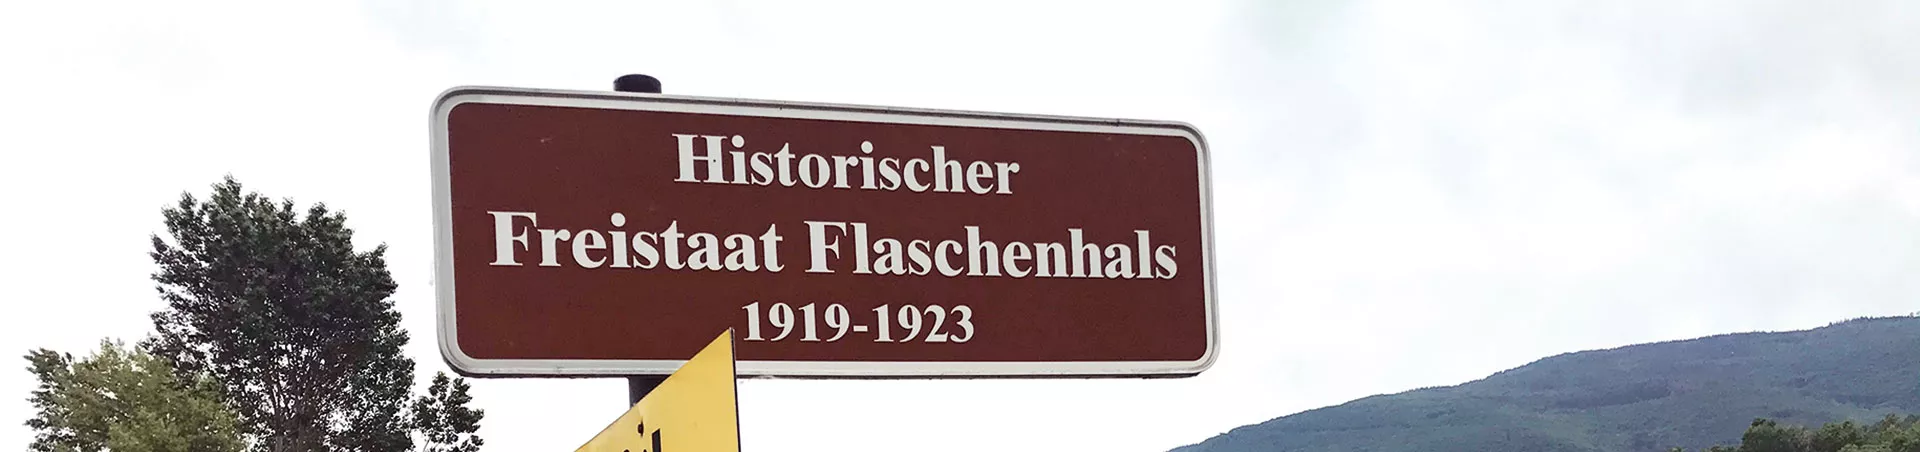 Titelbild-Rheintour-Freistaat-Flaschenhals_25-09-2020_99874